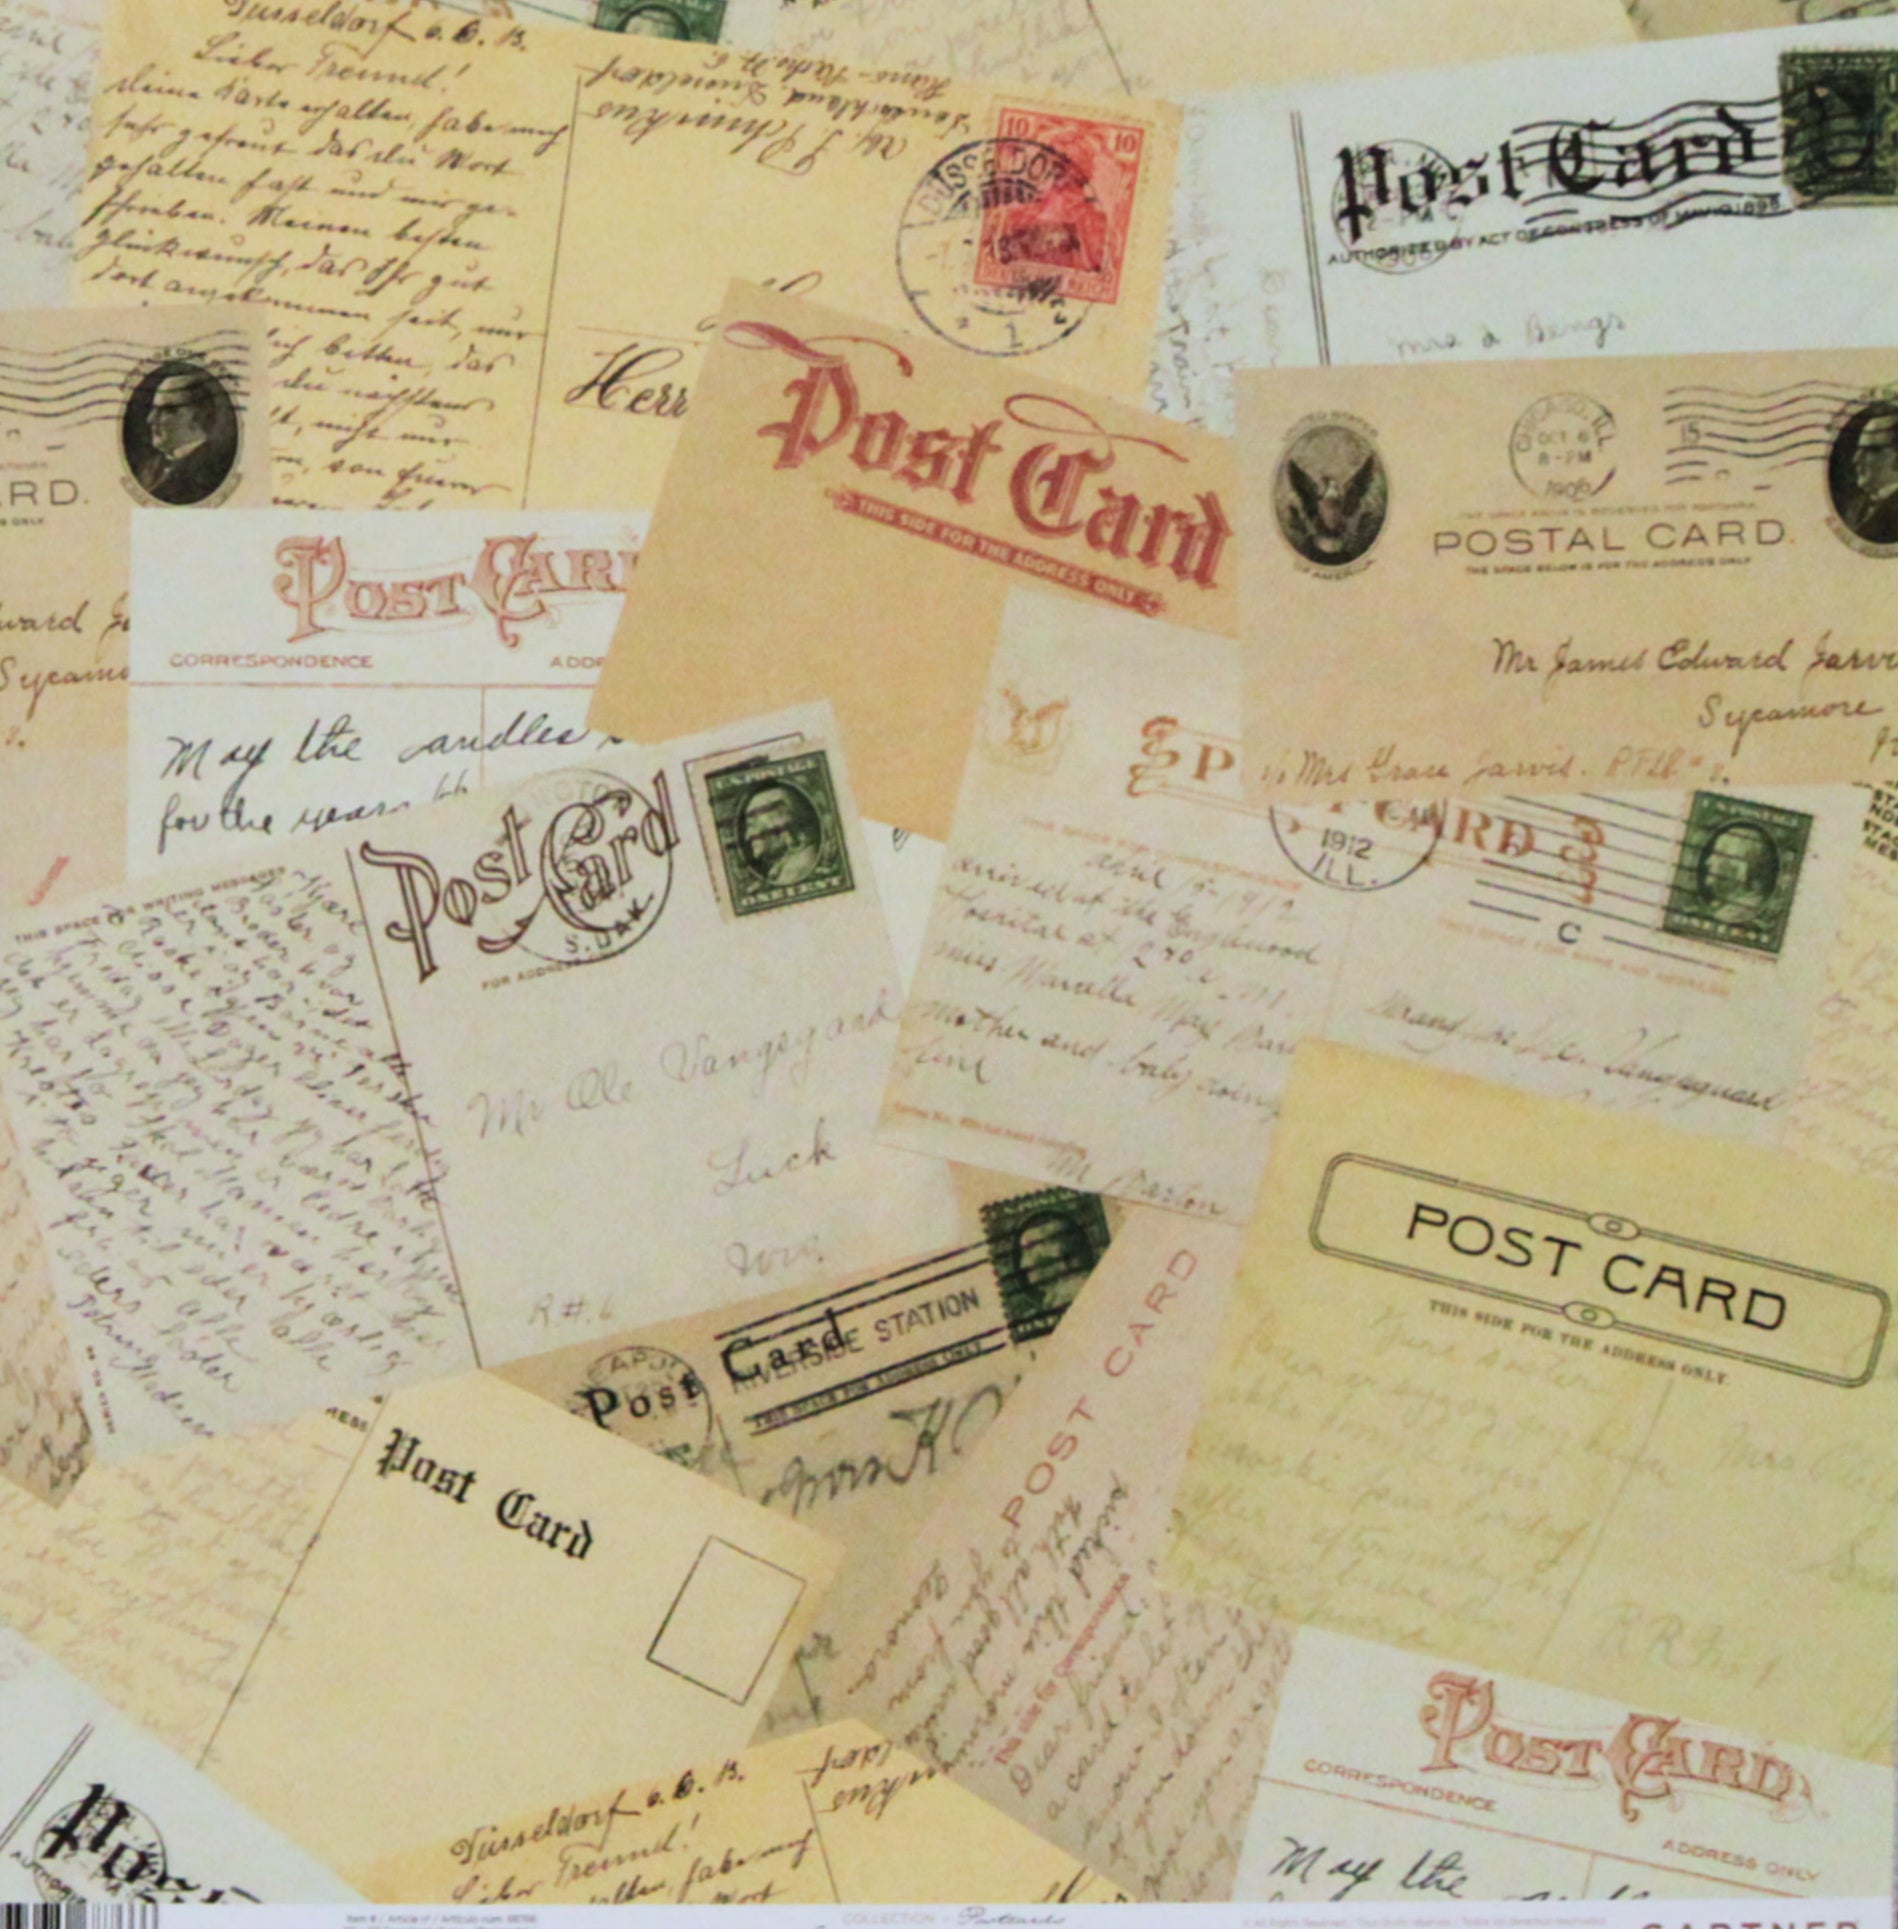 Postcard Paper & Cardstock for Postcards